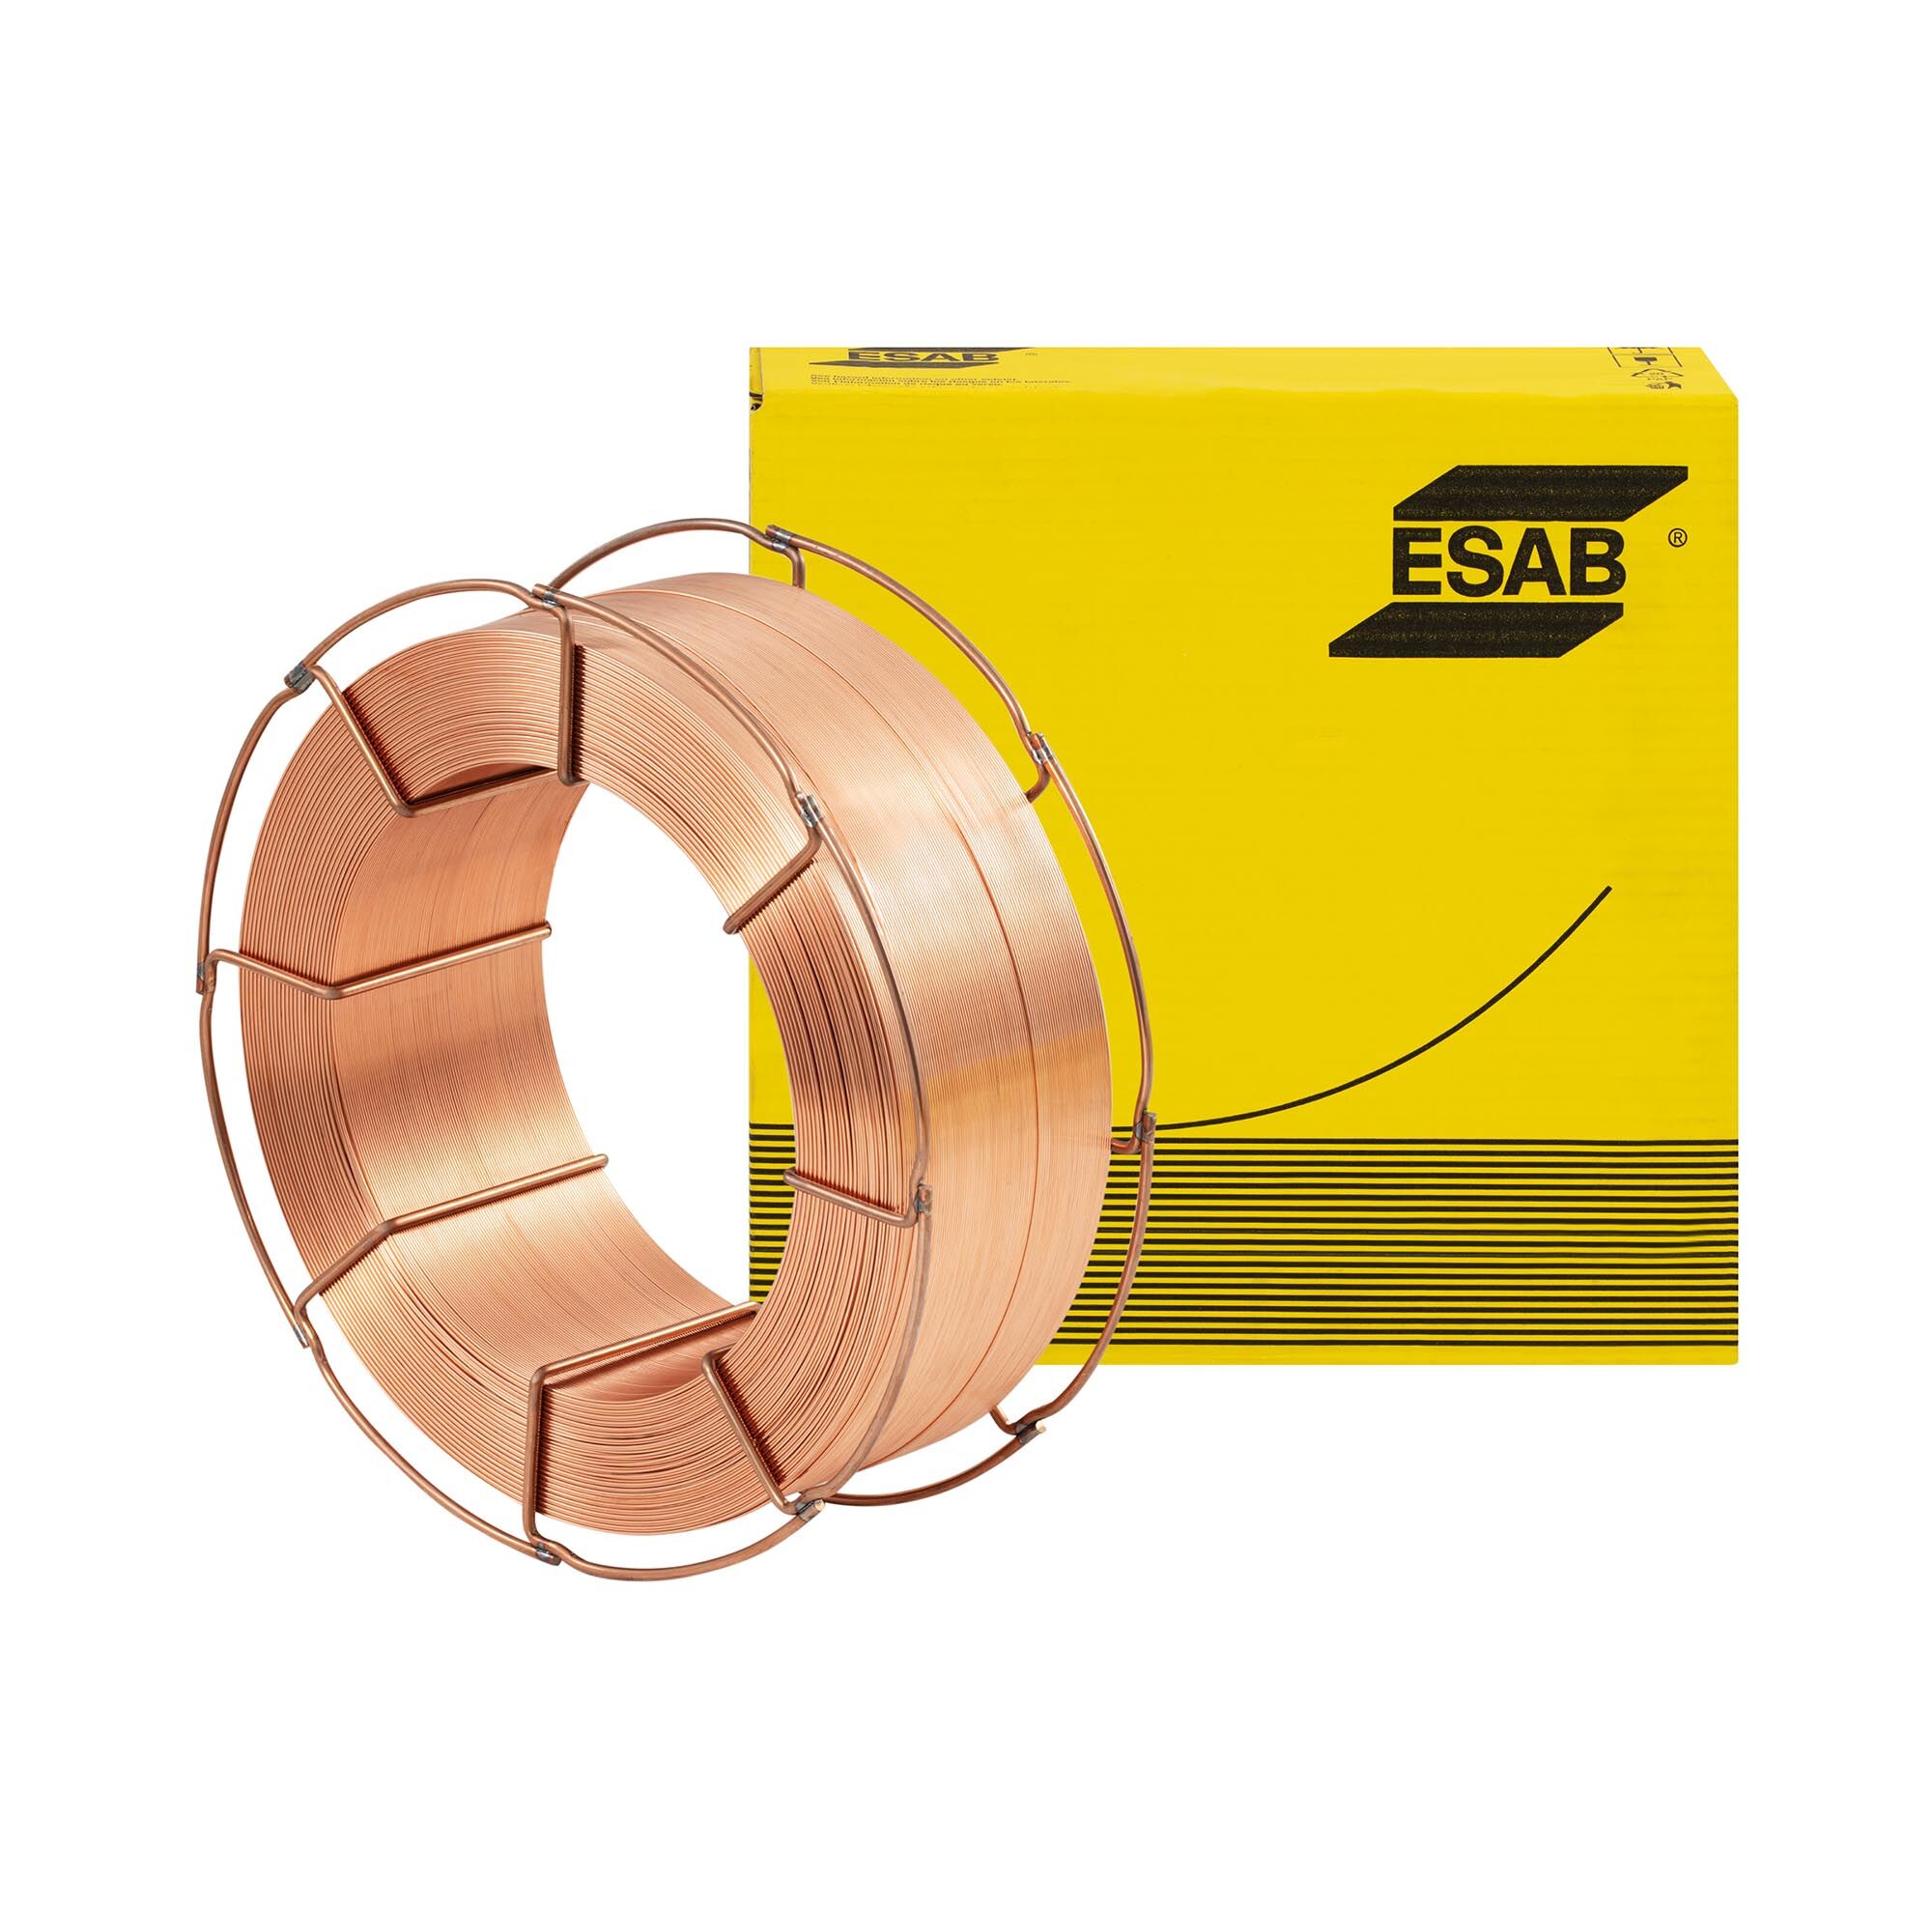 ESAB Sveisetråd - kobberbelagt - solid tråd - a. A. for P235 / S235 - P420 / S420 - 1.0 mm - 18 kg 10460019